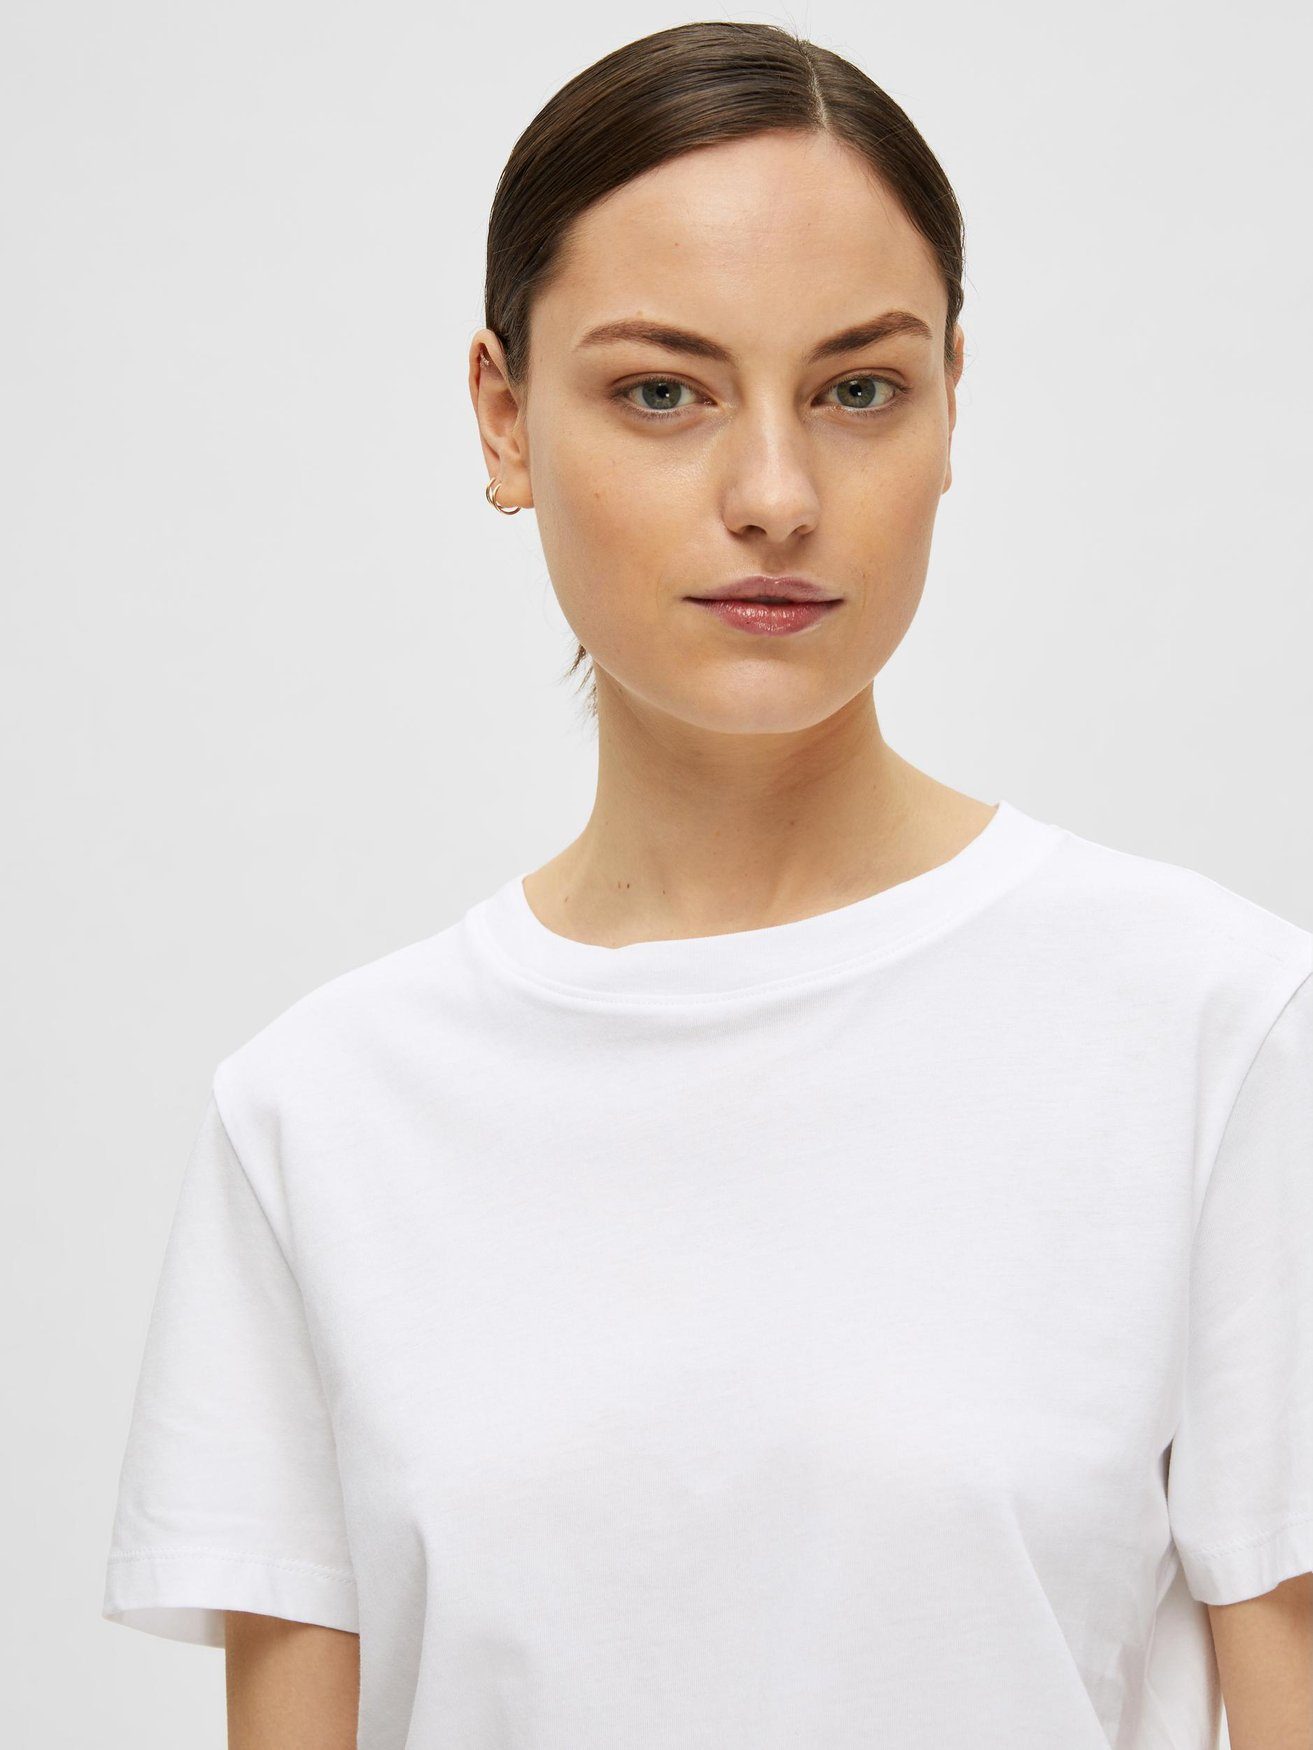 Shirt FEMME in Kurzarm Basic Weiß-2 SELECTED Dünnes SLFMYESSENTIAL 6075 T-Shirt